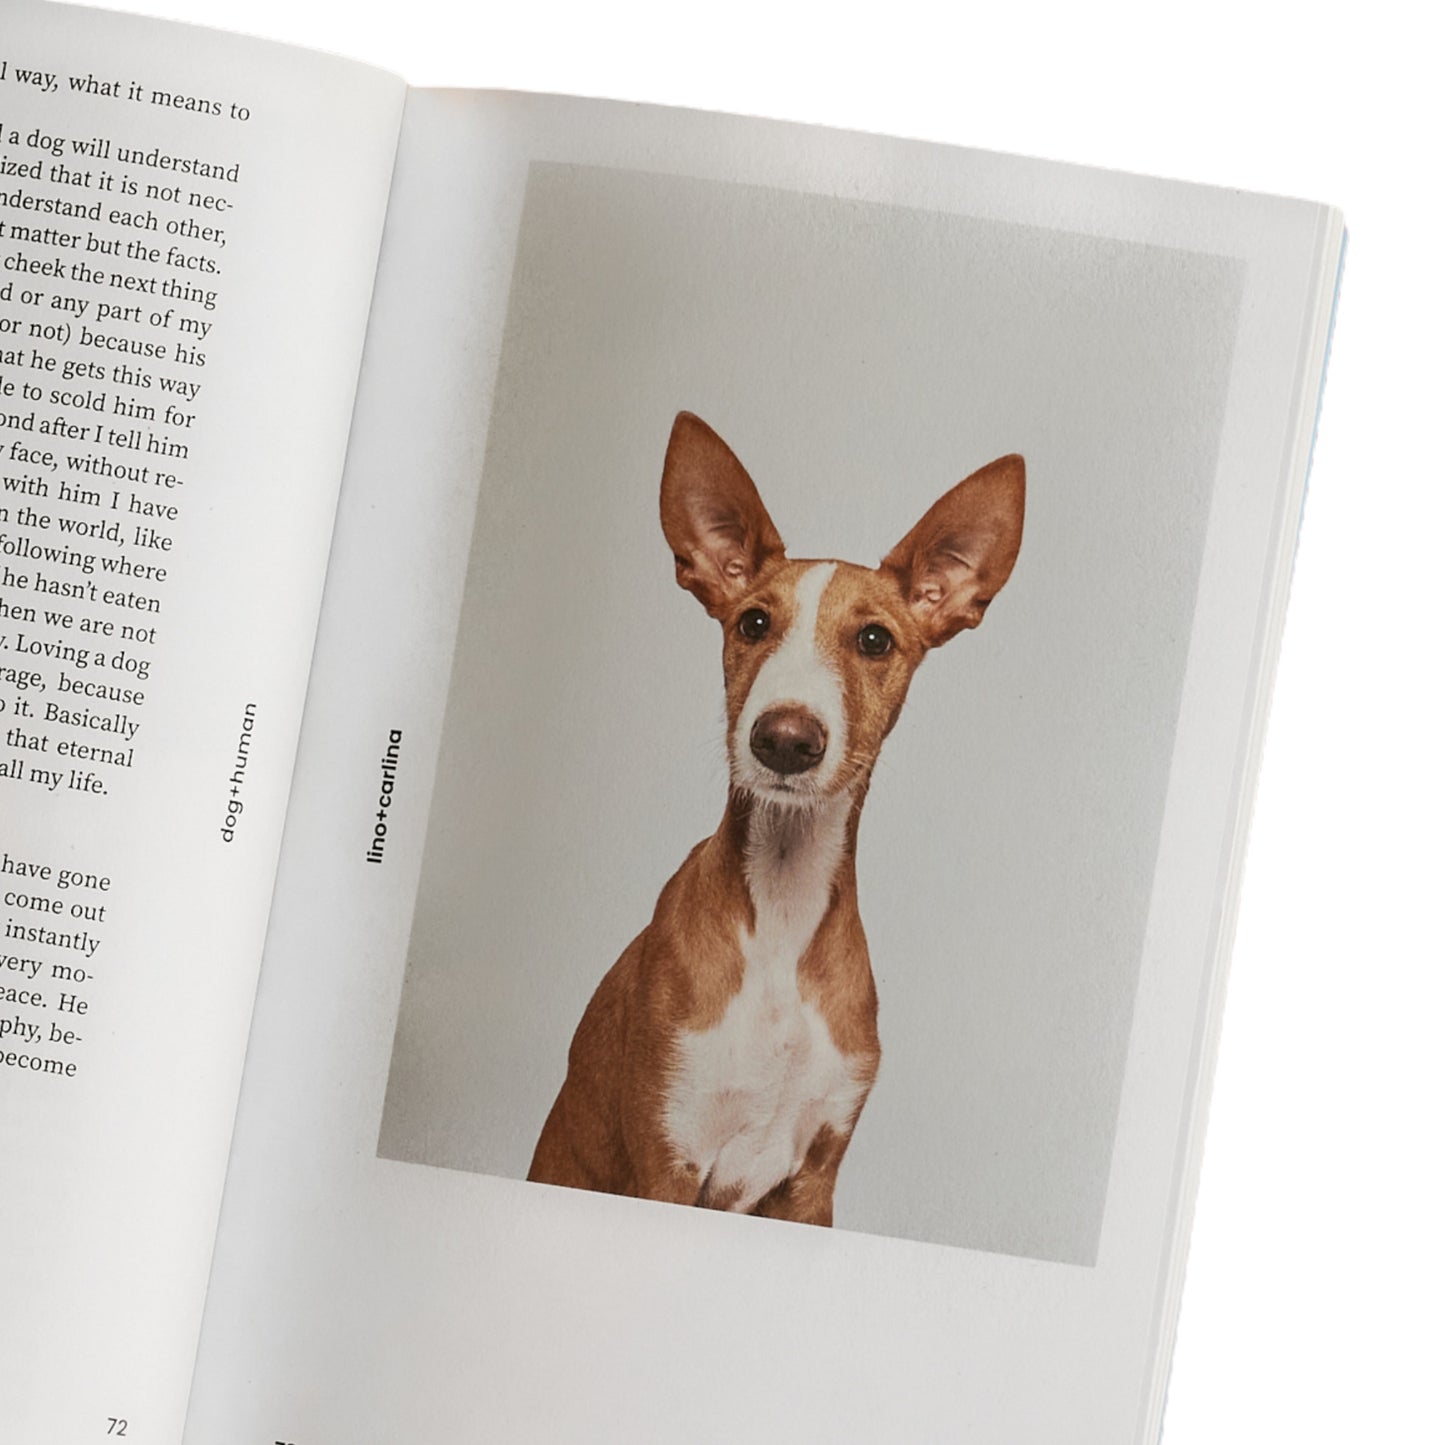 Dog+human • Magazine (issue 2)